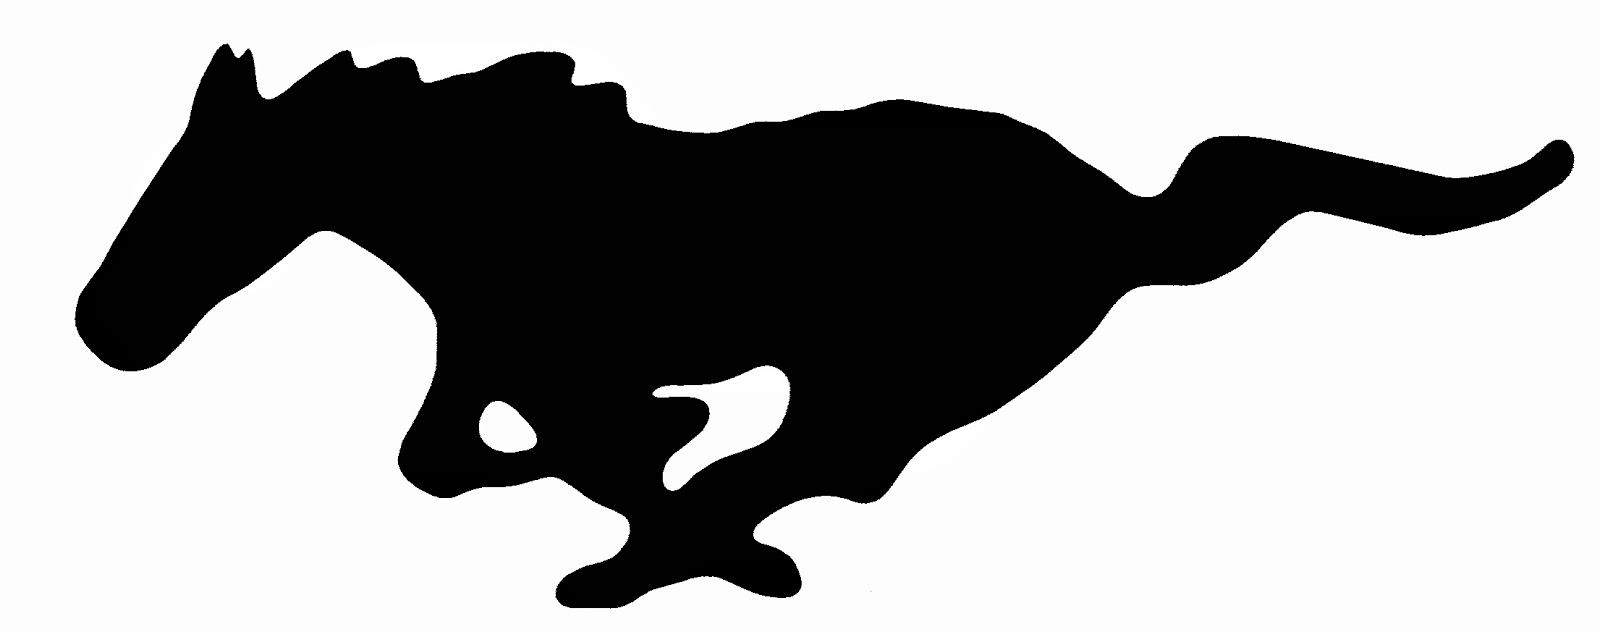 Ford mustang logo vector art #8